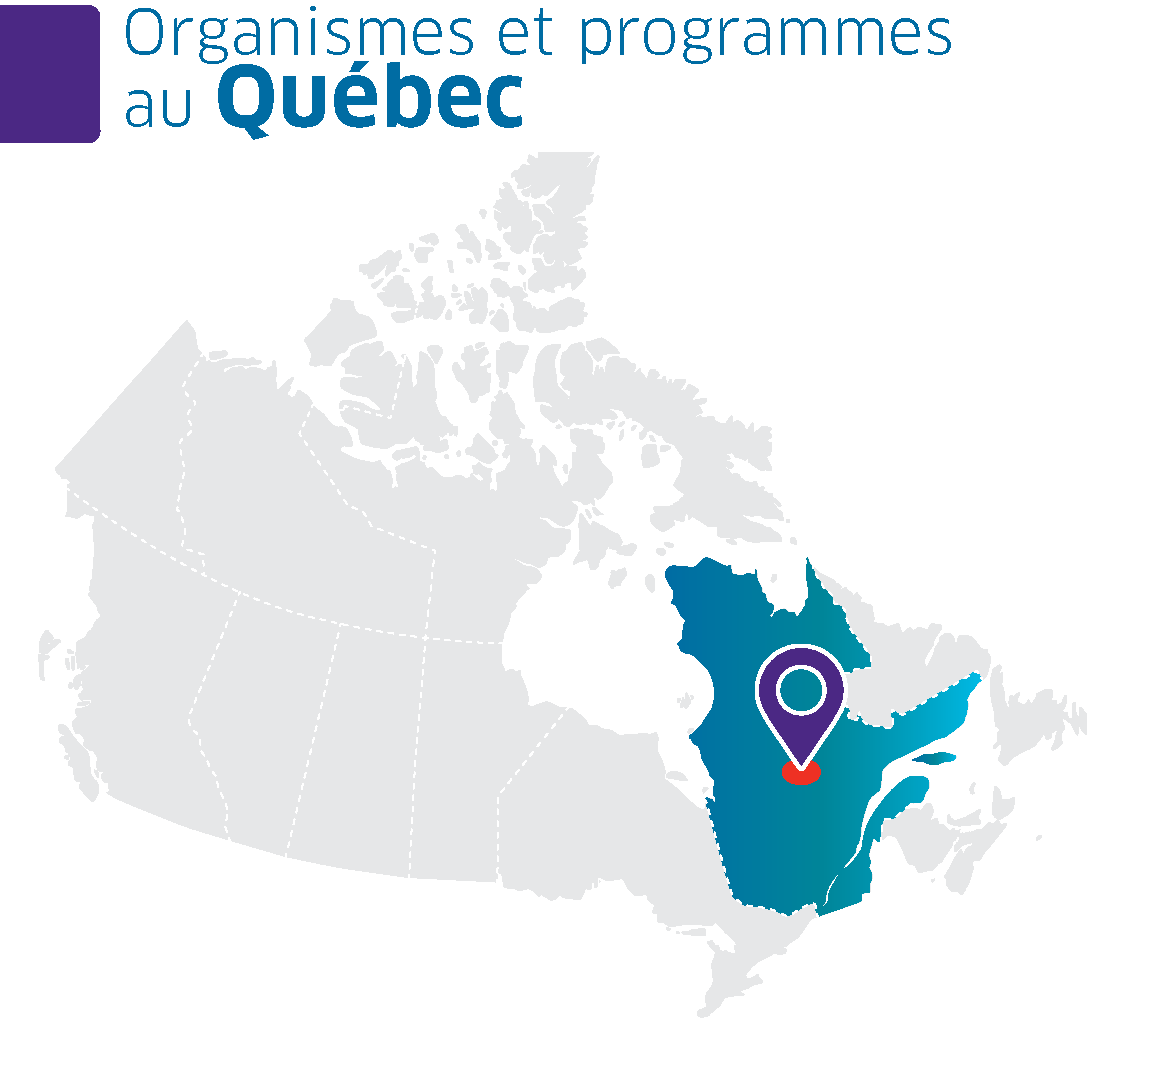 Une carte du Canada avec la province de Québec en surbrillance